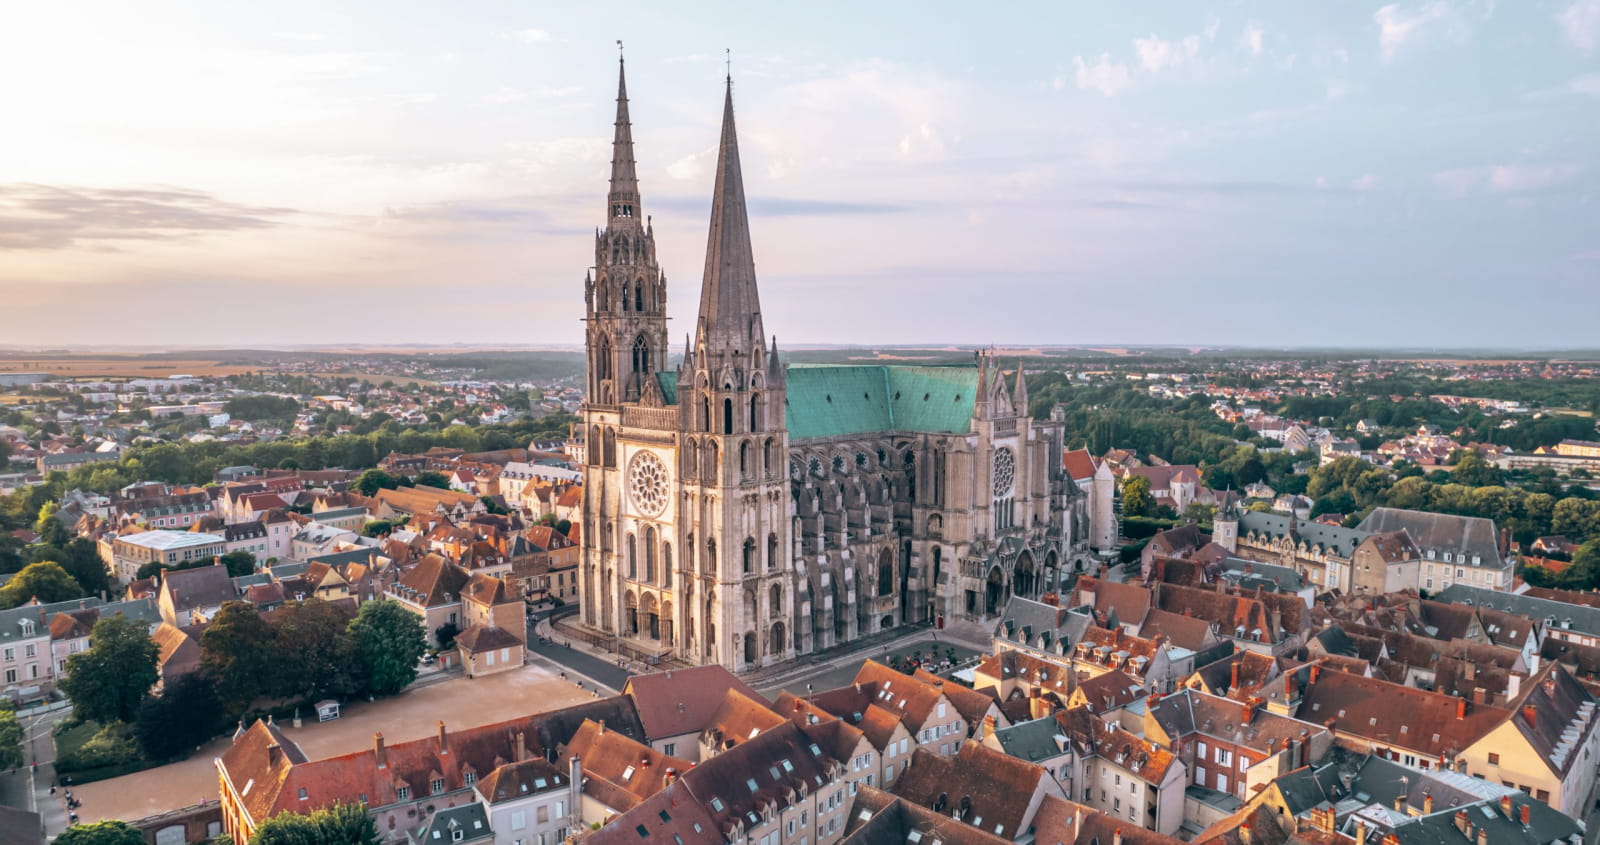 Vue du ciel de la cathédrale de Chartres au moment du coucher de soleil